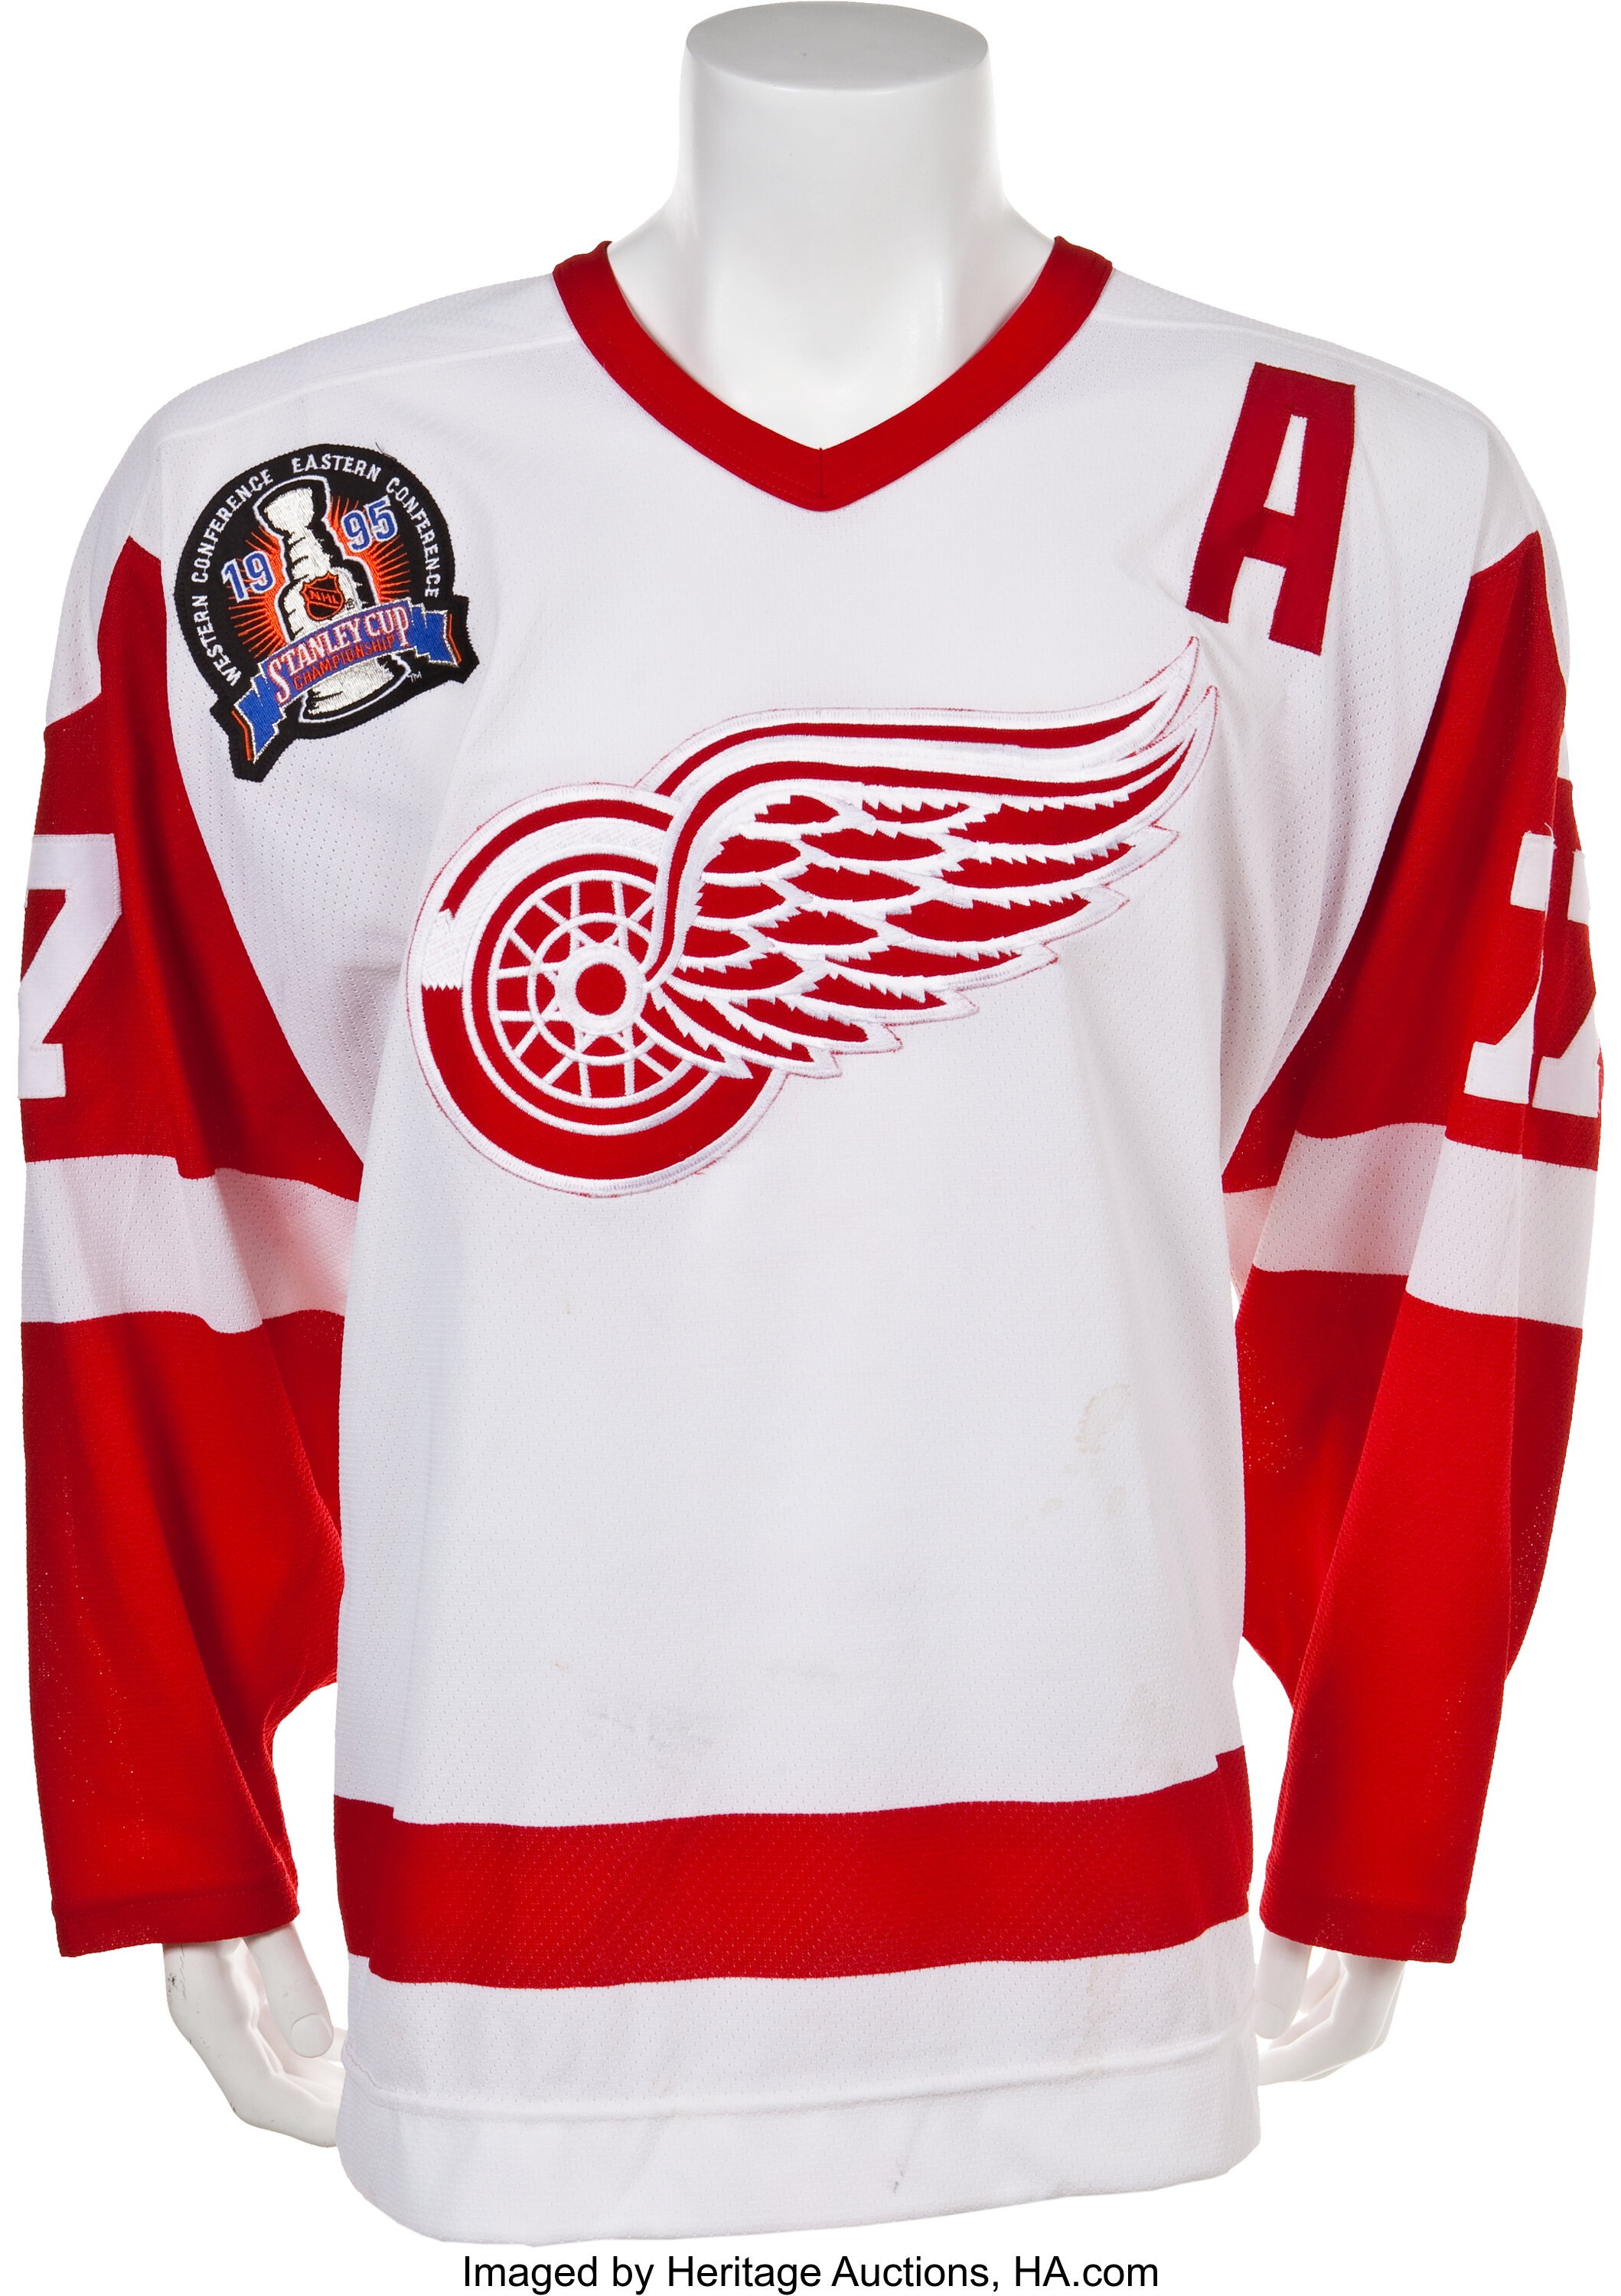 Detroit Red Wings Gear, Jerseys, Store, Pro Shop, Hockey Apparel